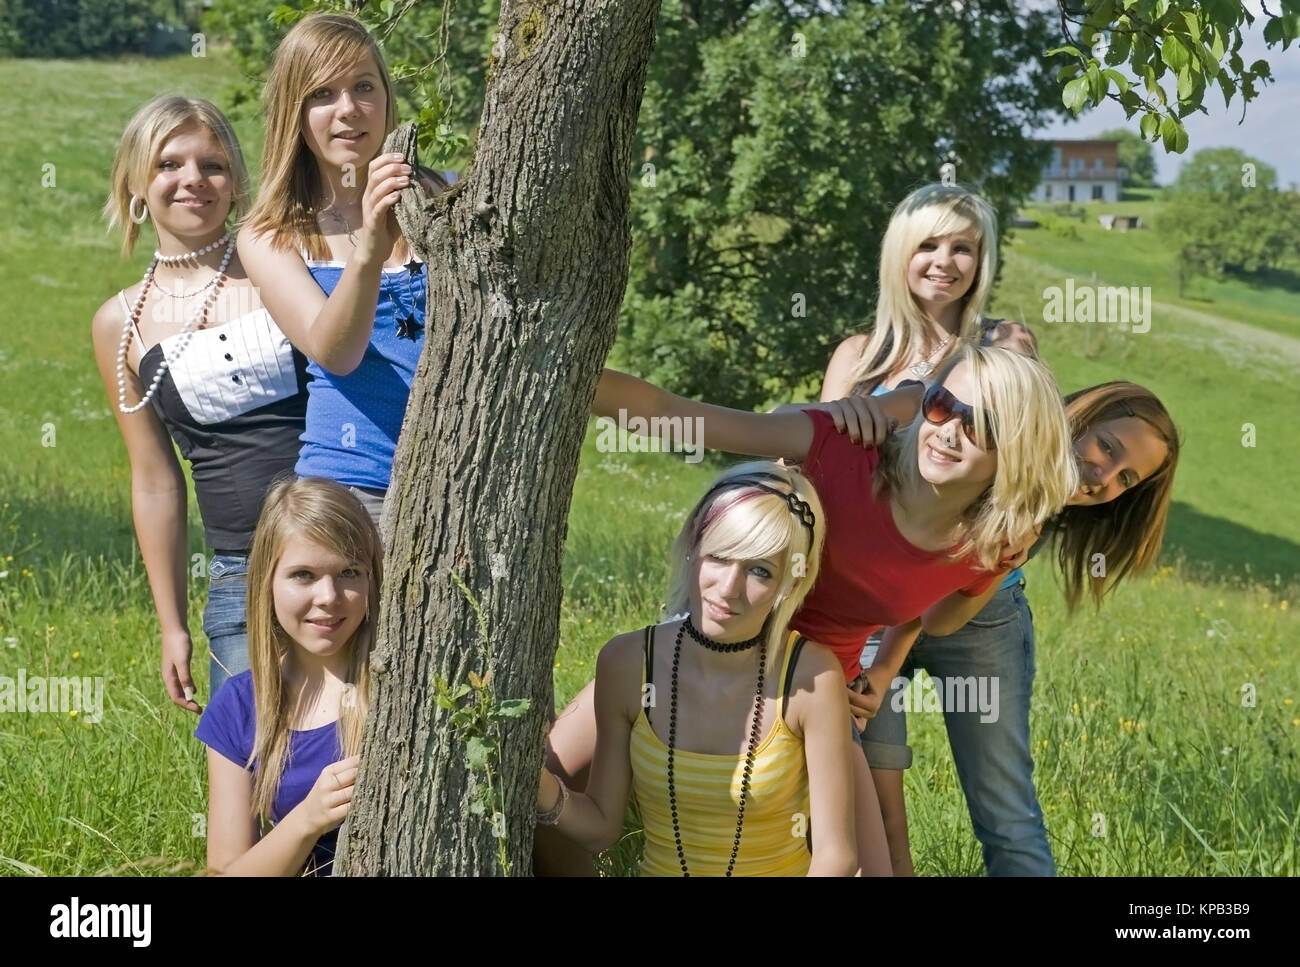 Model Release, Jugendliche Maedchen Stehen um Einen Baumstamm in der Wiese - Mädchen im Teenageralter Stockfoto